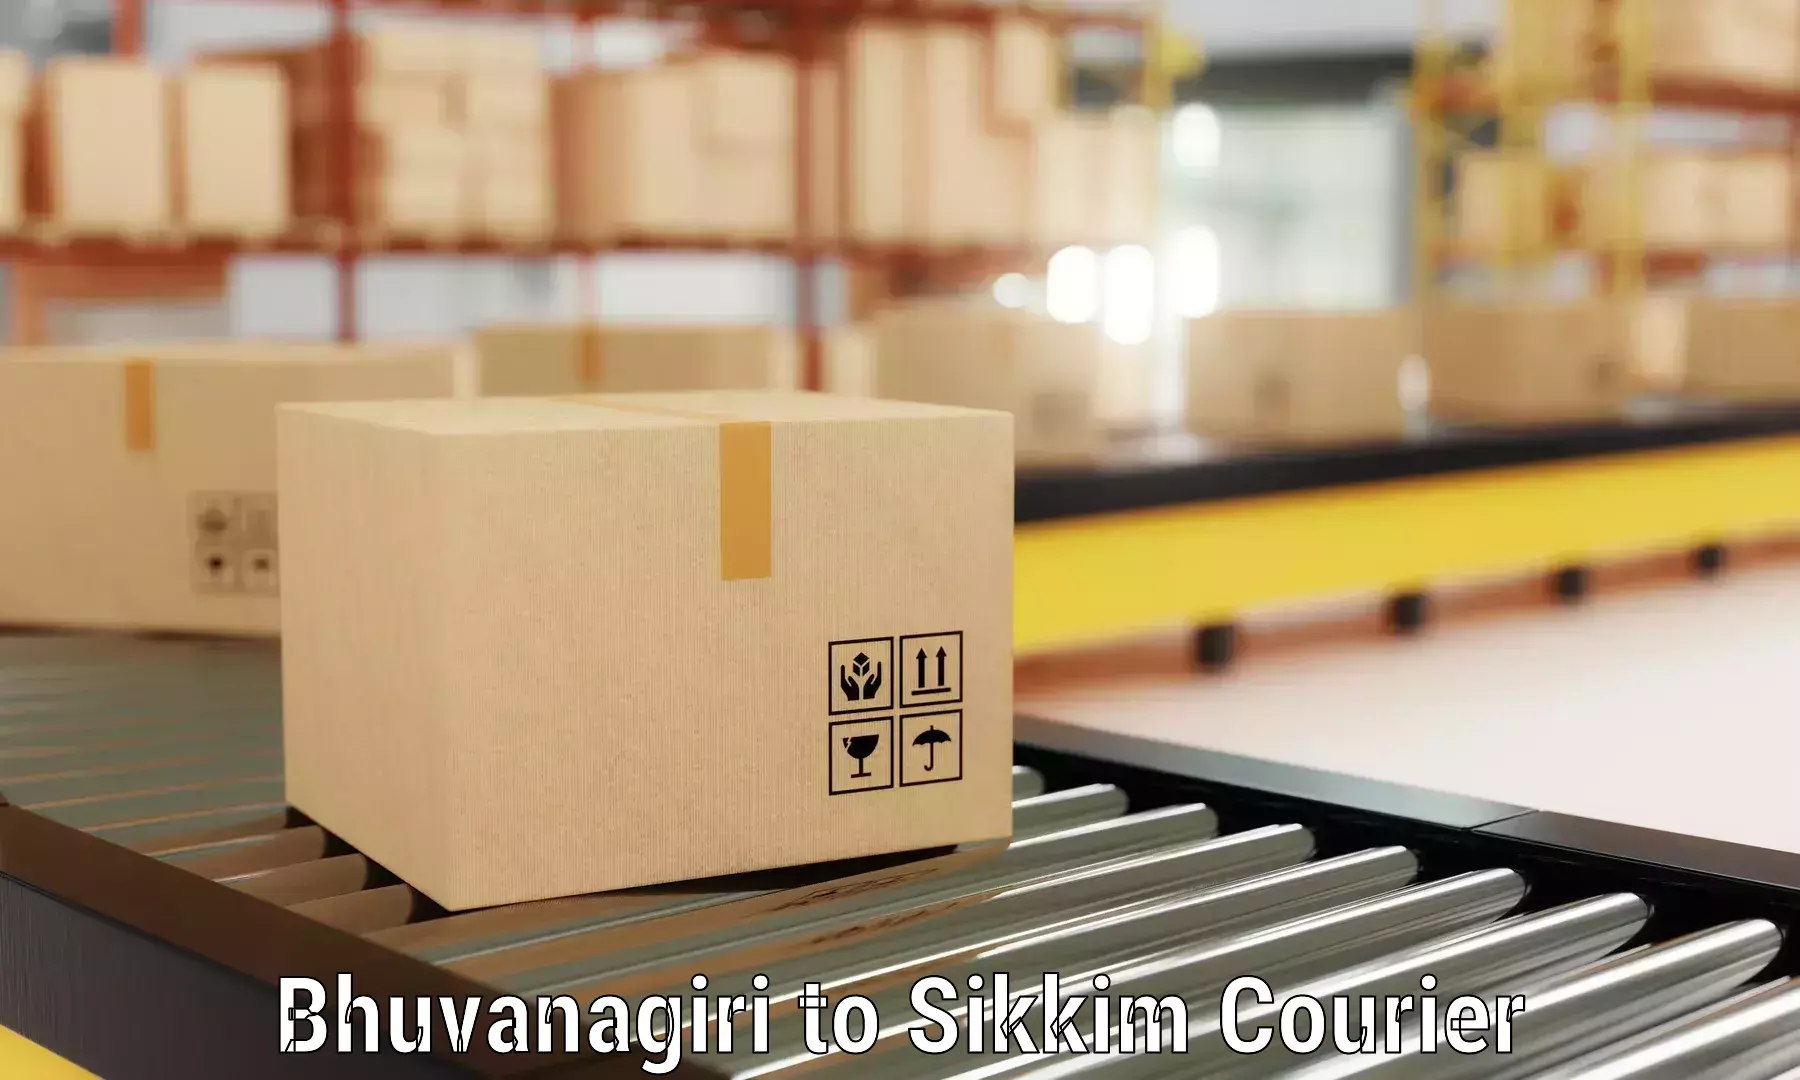 Furniture transport experts Bhuvanagiri to Sikkim